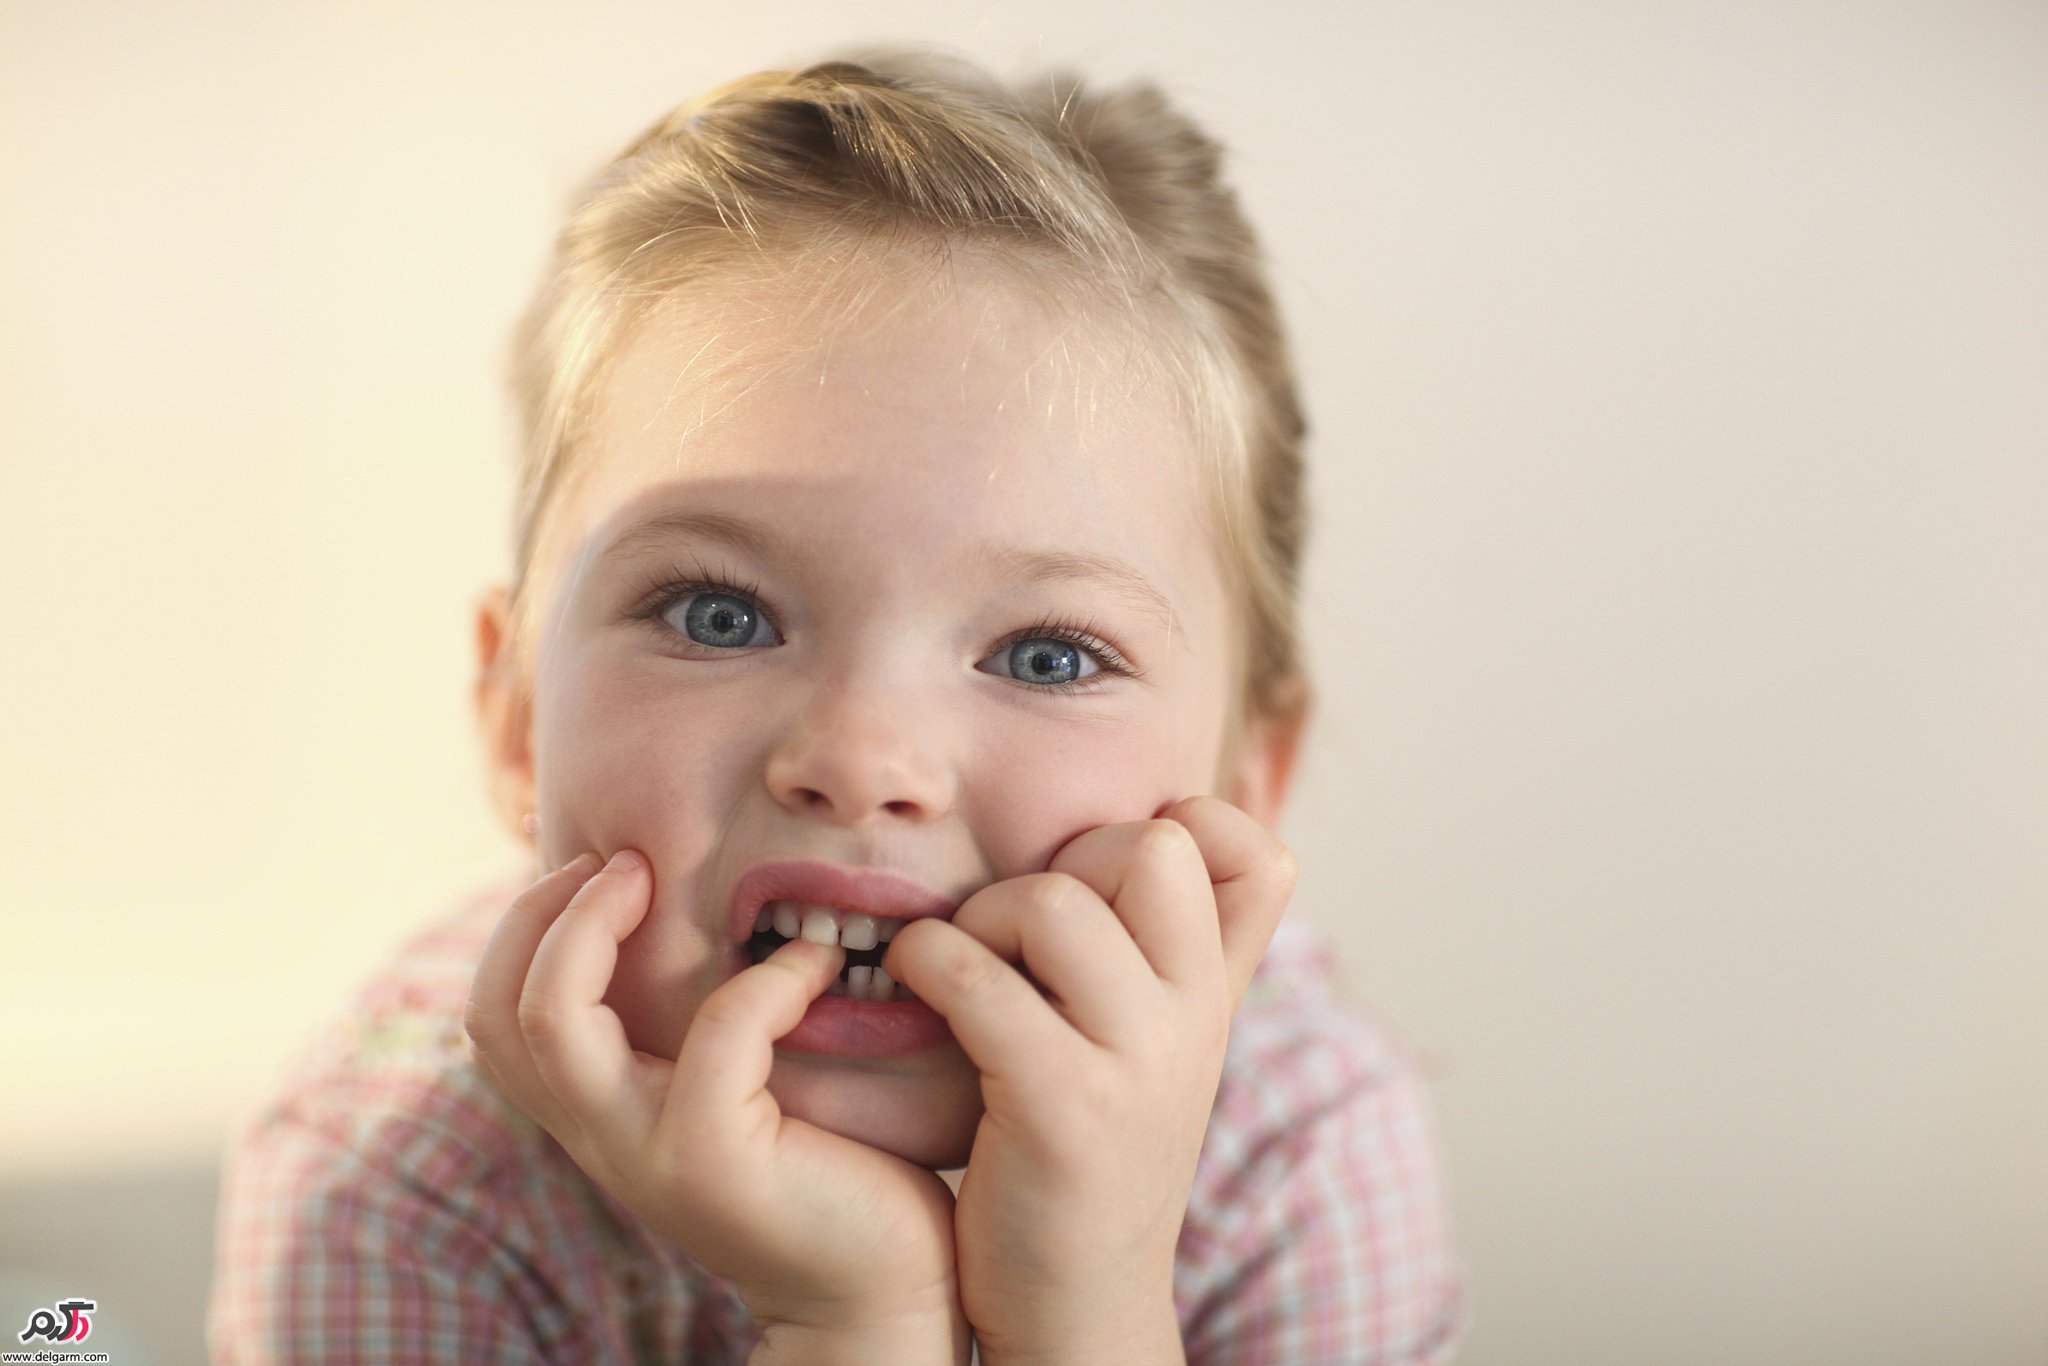  چطور از ناخن خوردن کودکان جلوگیری کنیم؟ 